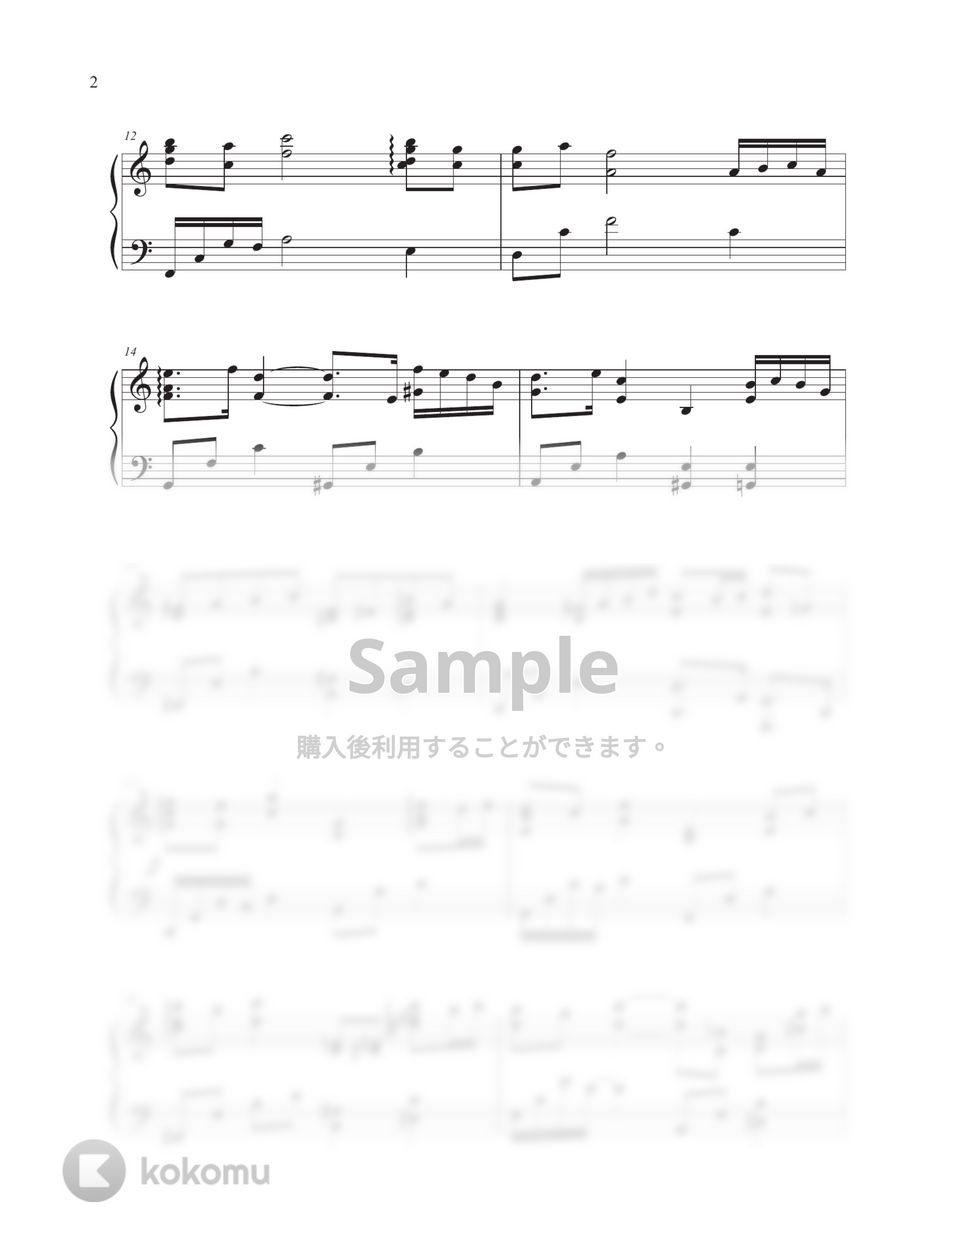 イム・スンボム(Pivo project) - 回想(reminiscence) (『海街チャチャチャ』BGM) by Tully Piano